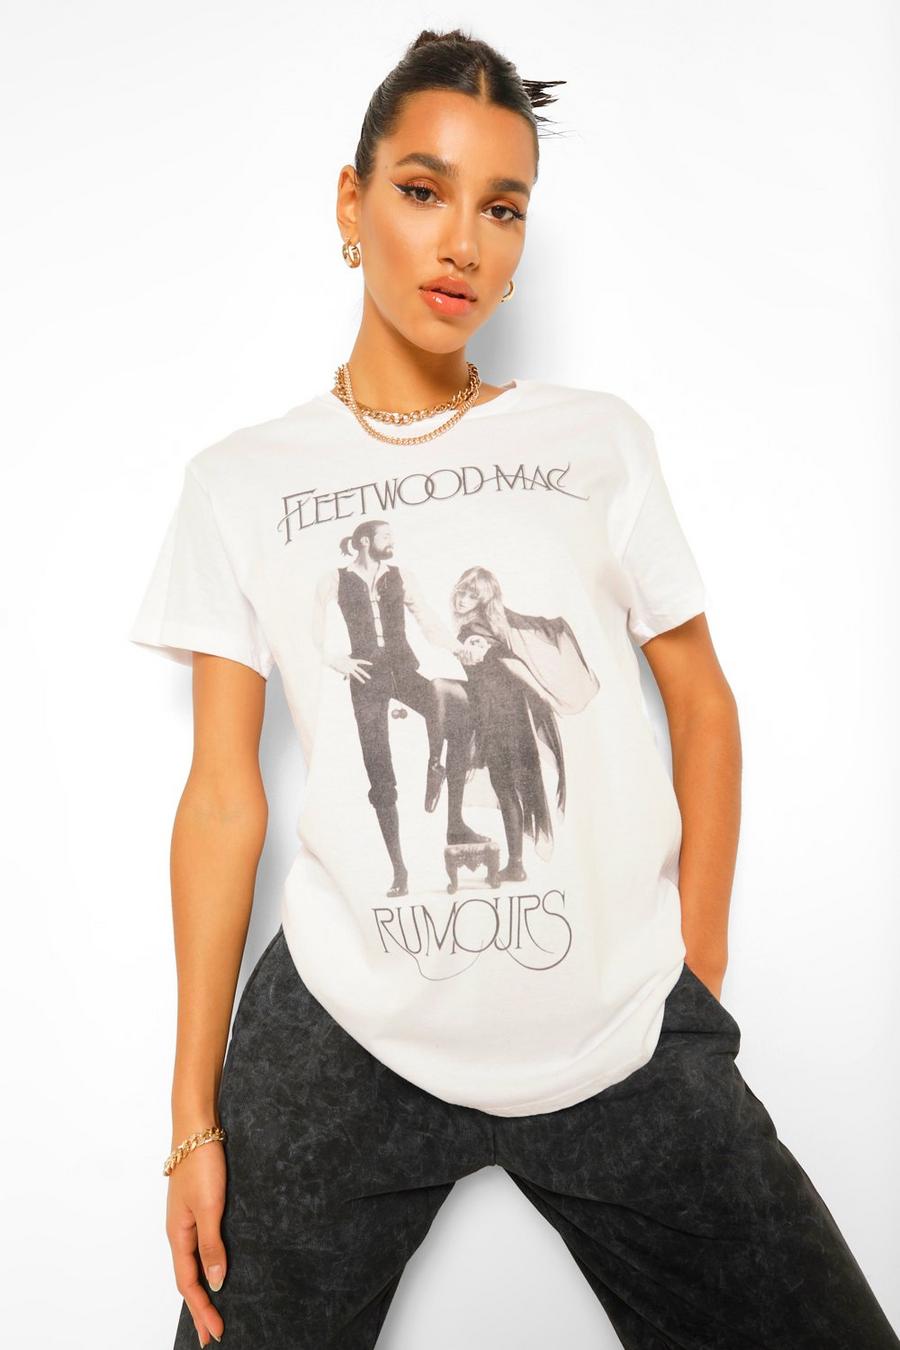 Camiseta con licencia de Fleetwood Mac Rumours image number 1